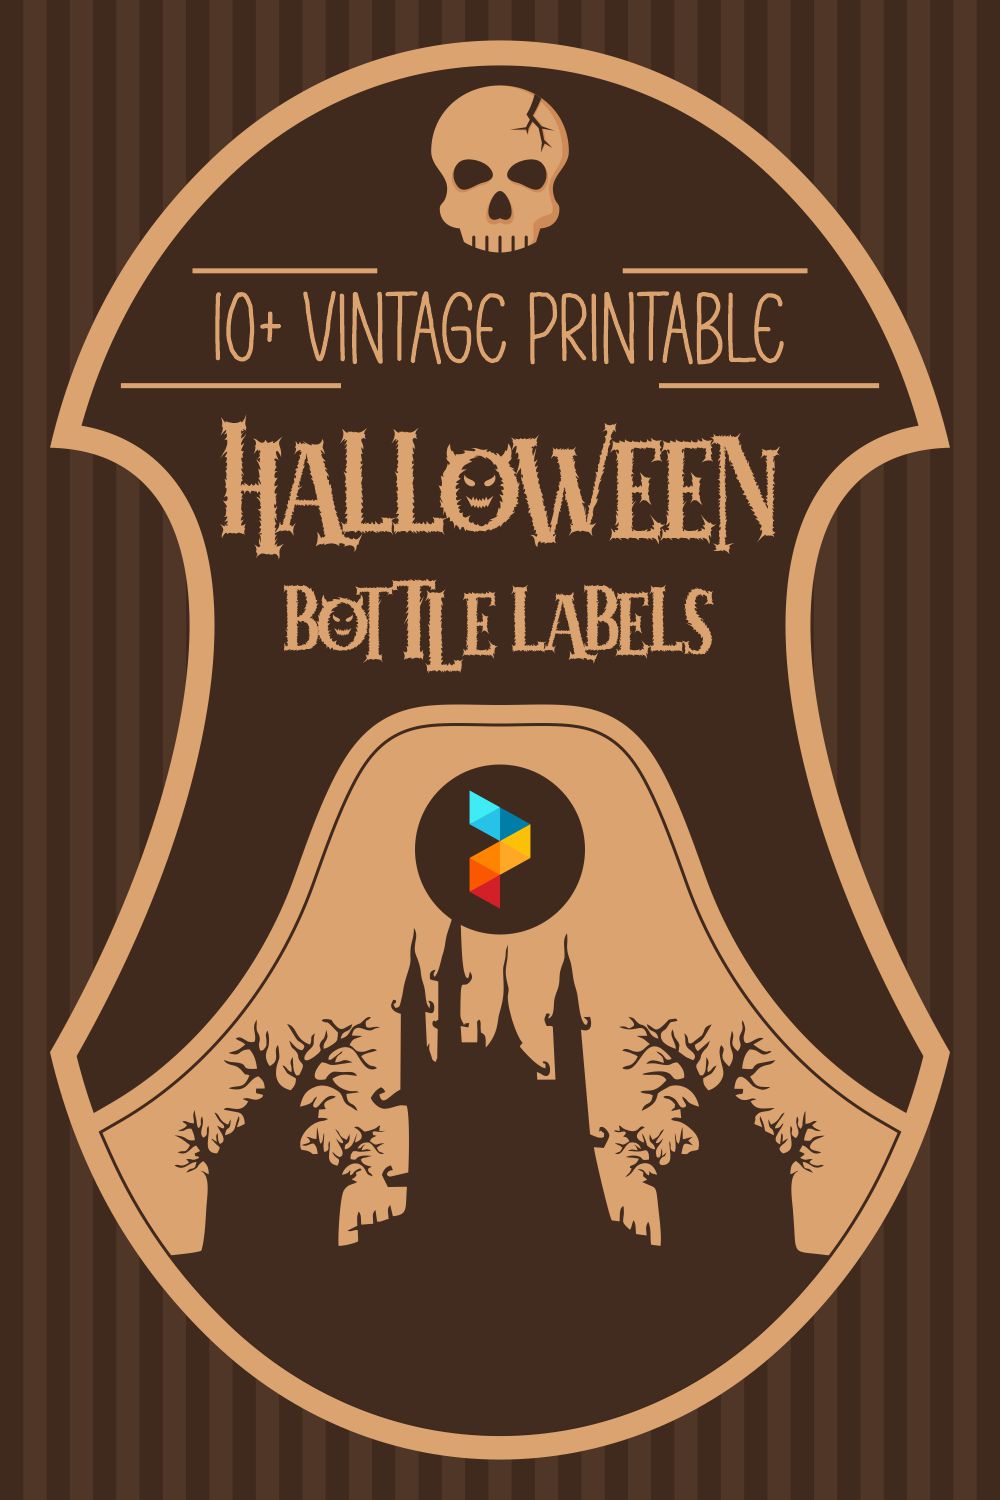 Vintage Printable Halloween Bottle Labels